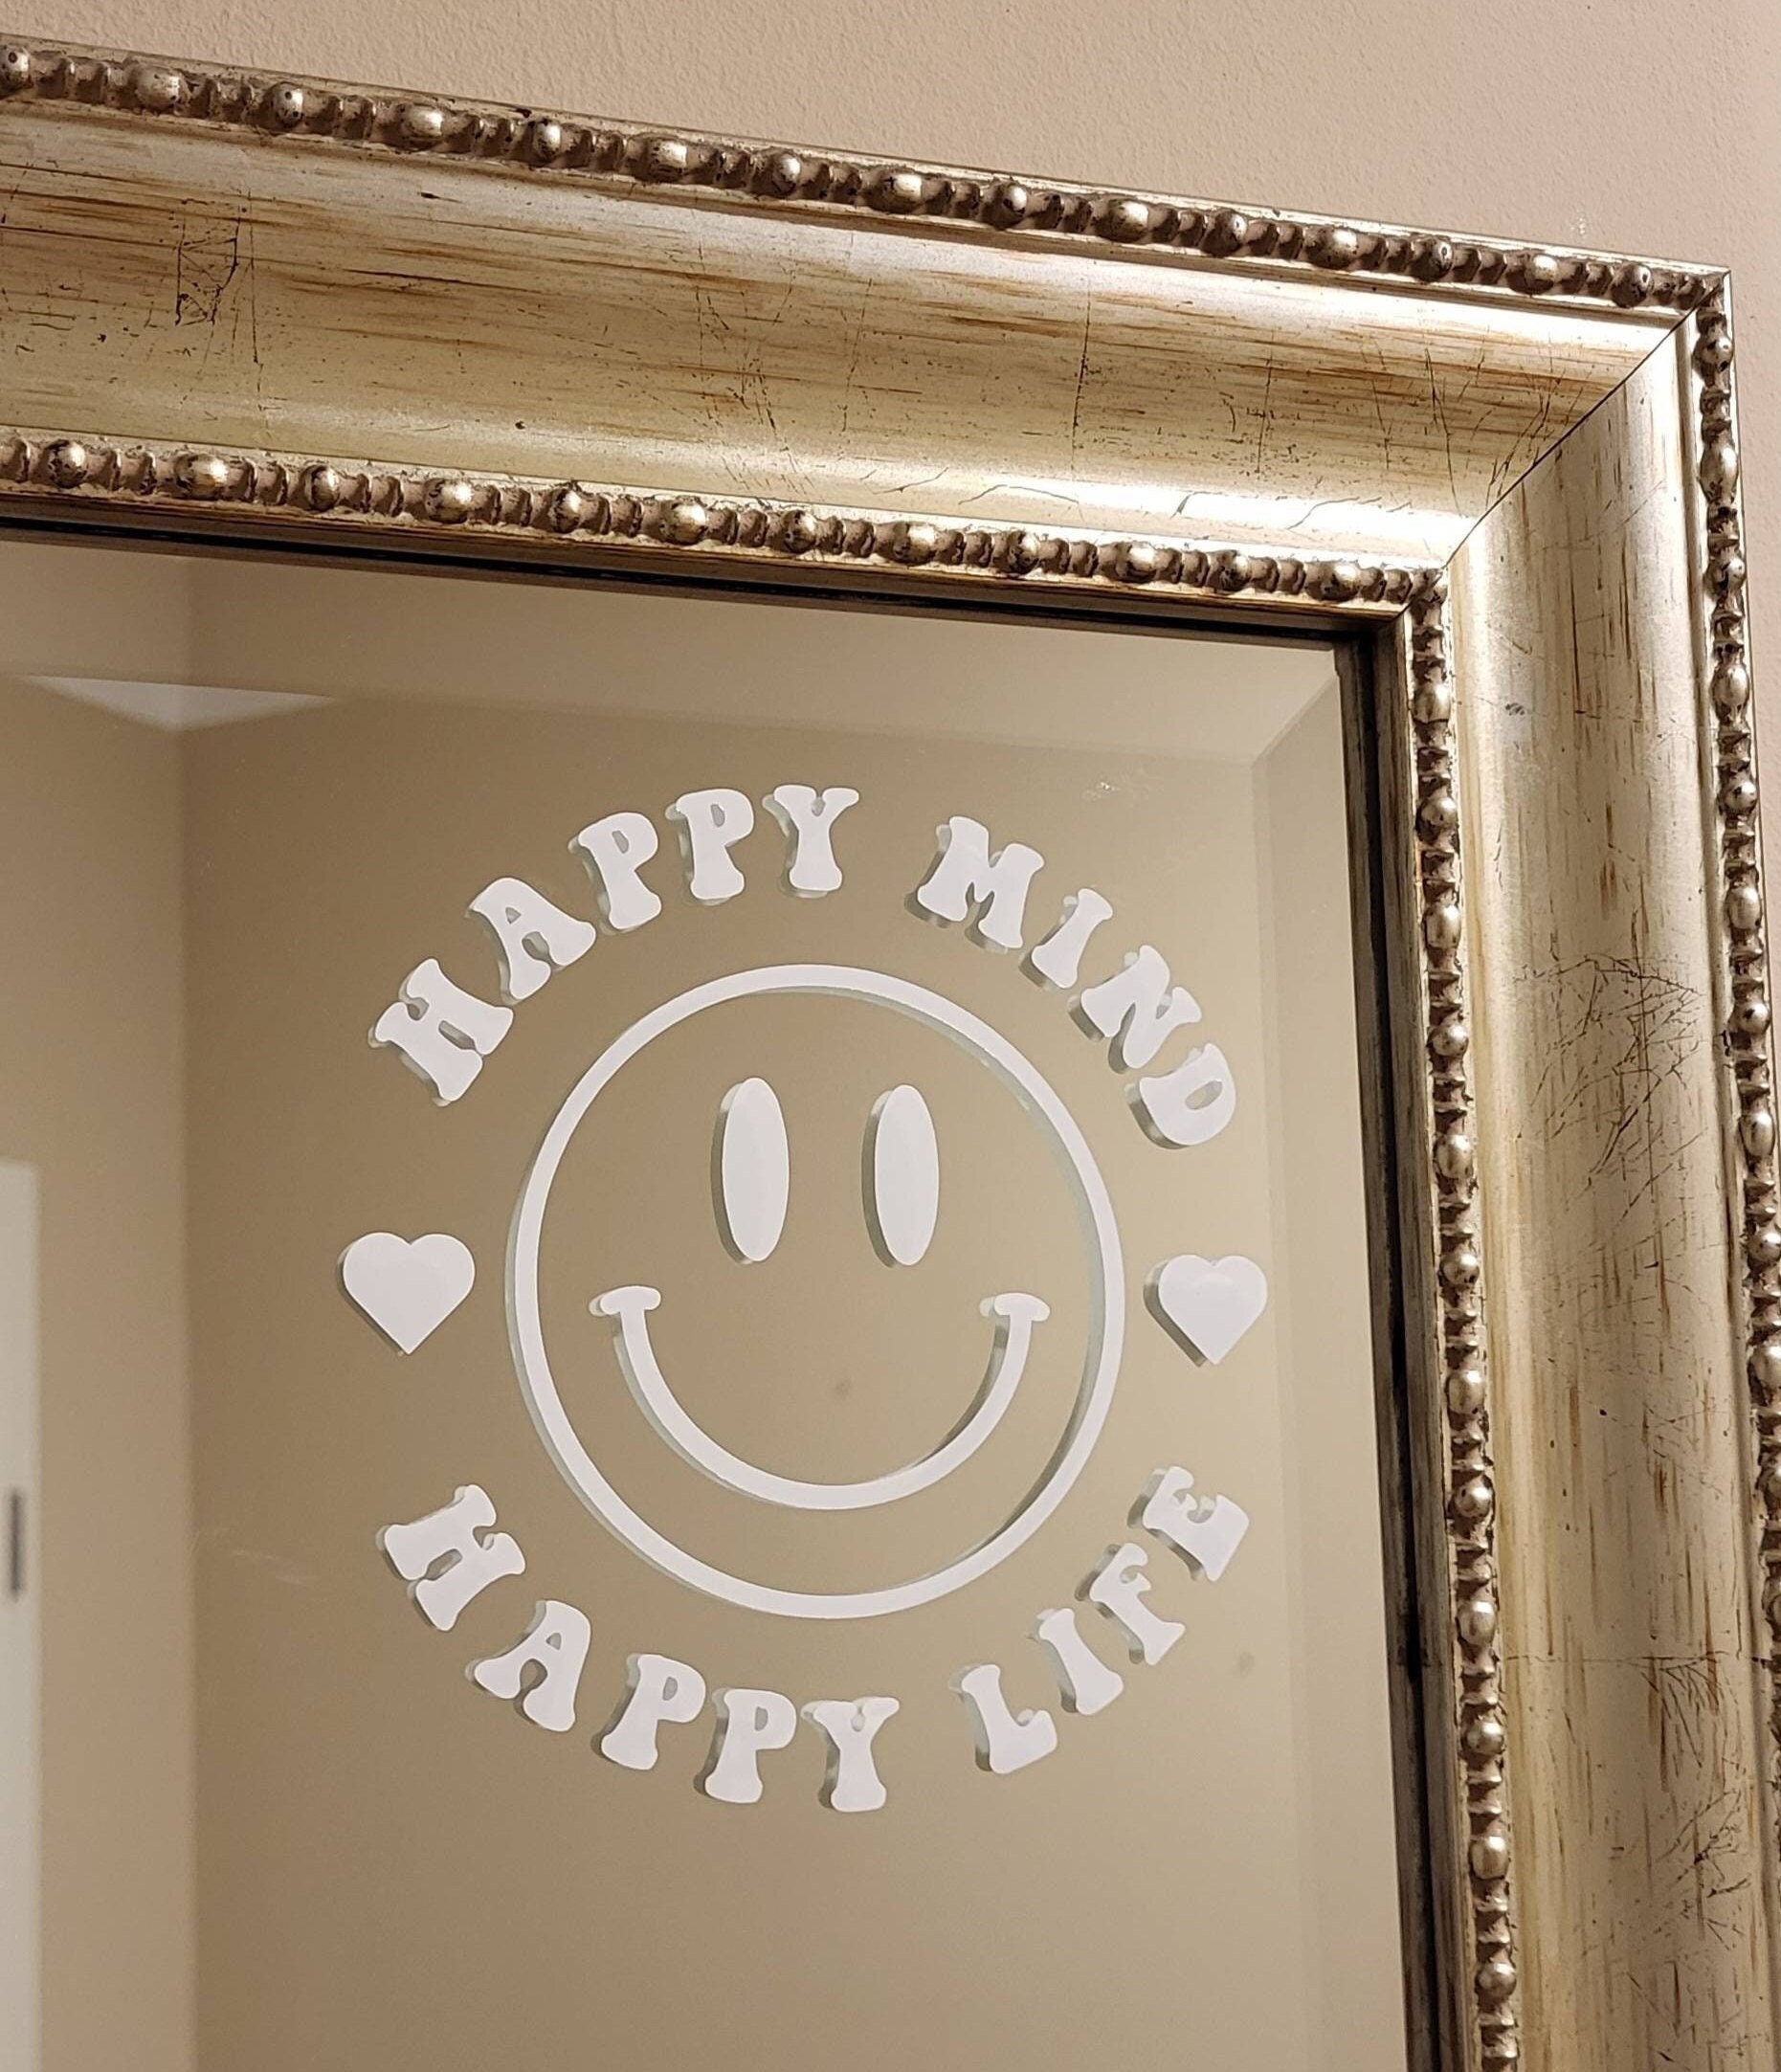 Smiley Gesicht für Spiegel Wandtattoal Art Sticker Vinyl Home